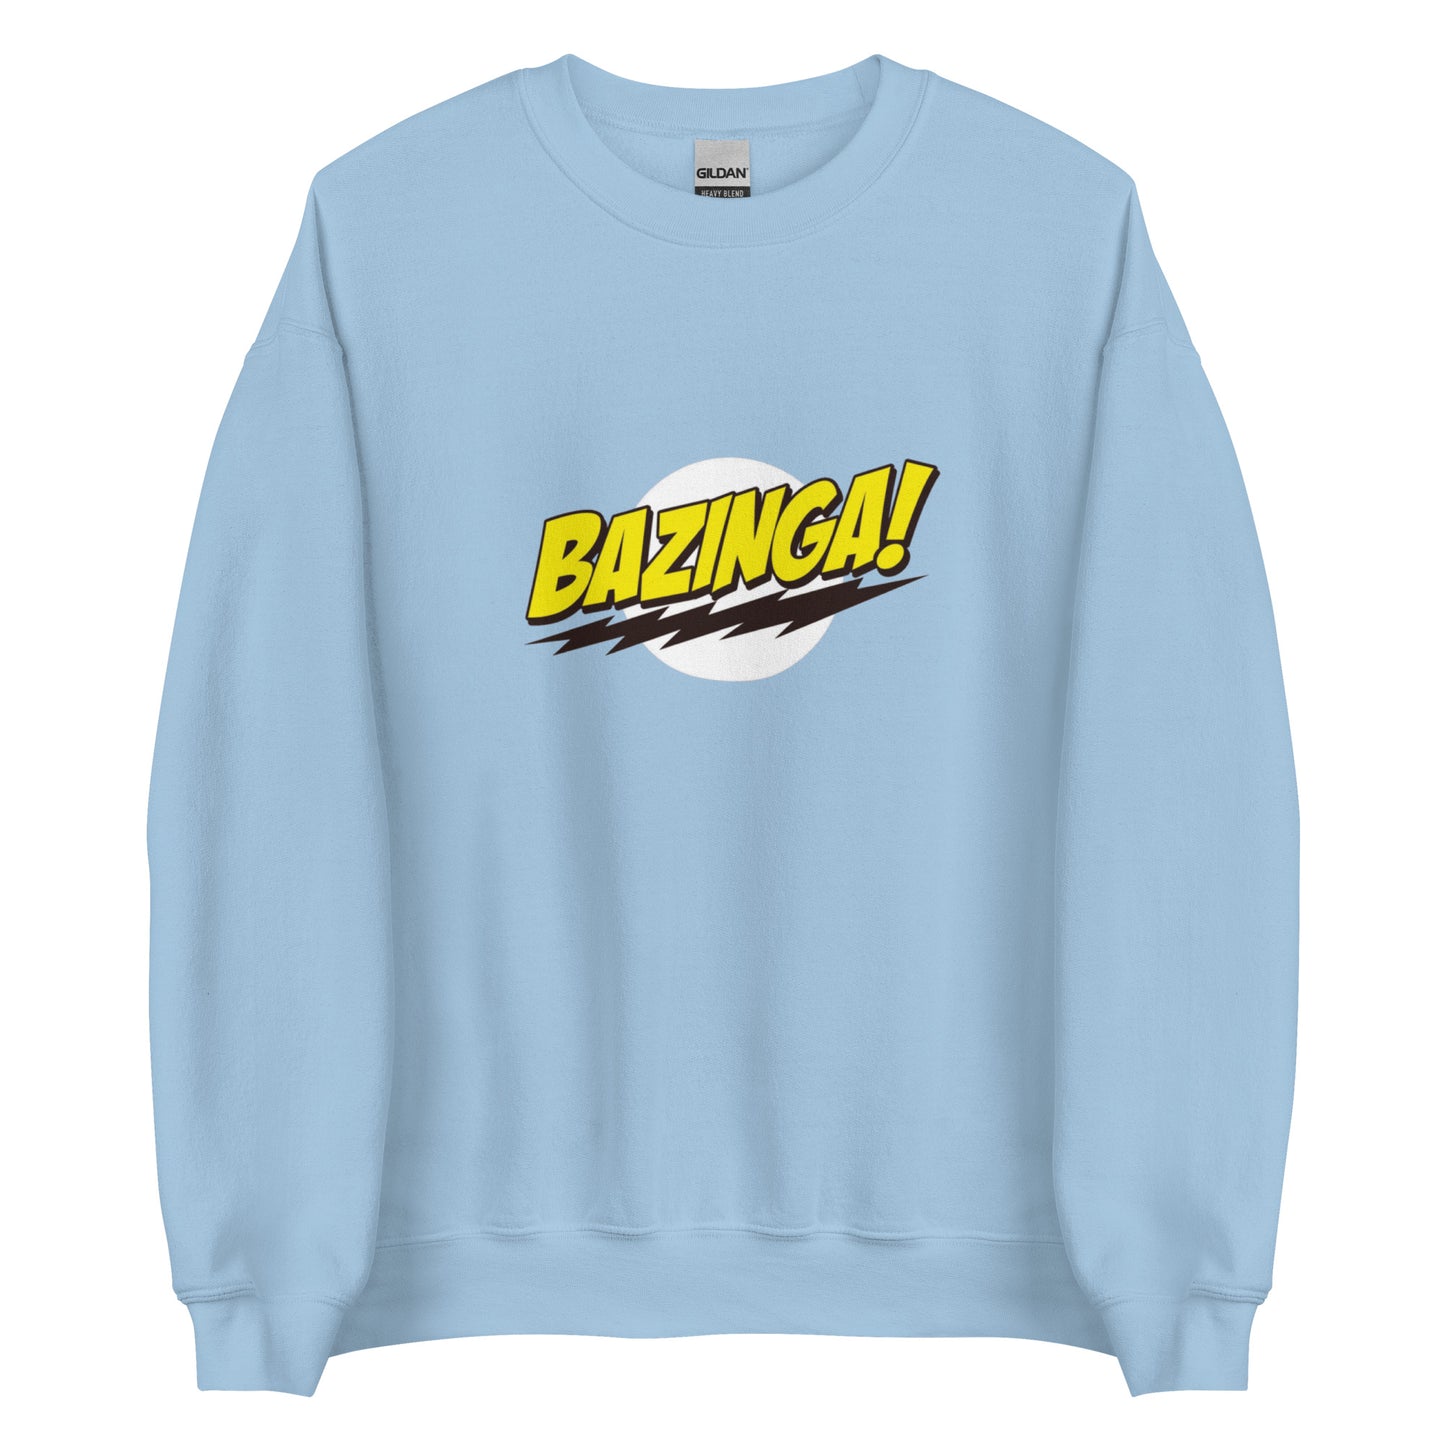 Sweatshirt Bazinga